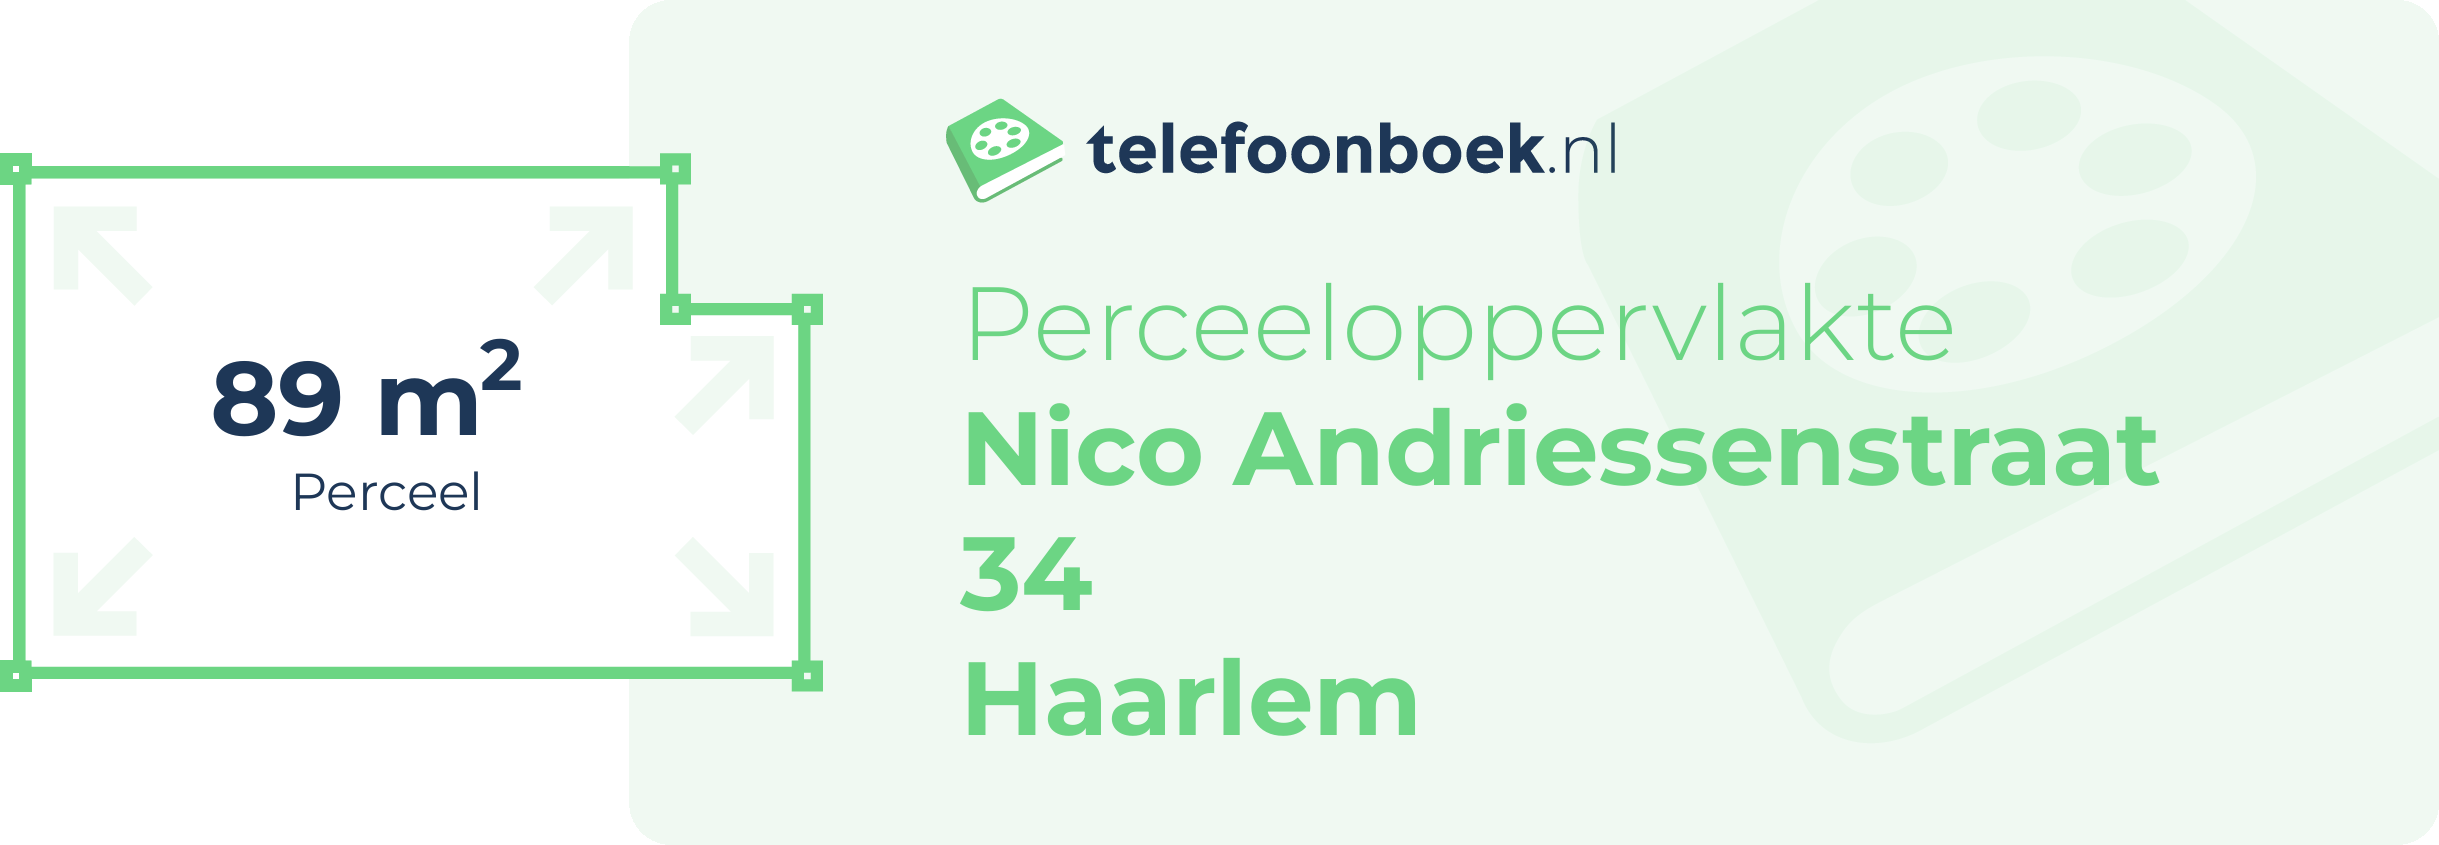 Perceeloppervlakte Nico Andriessenstraat 34 Haarlem